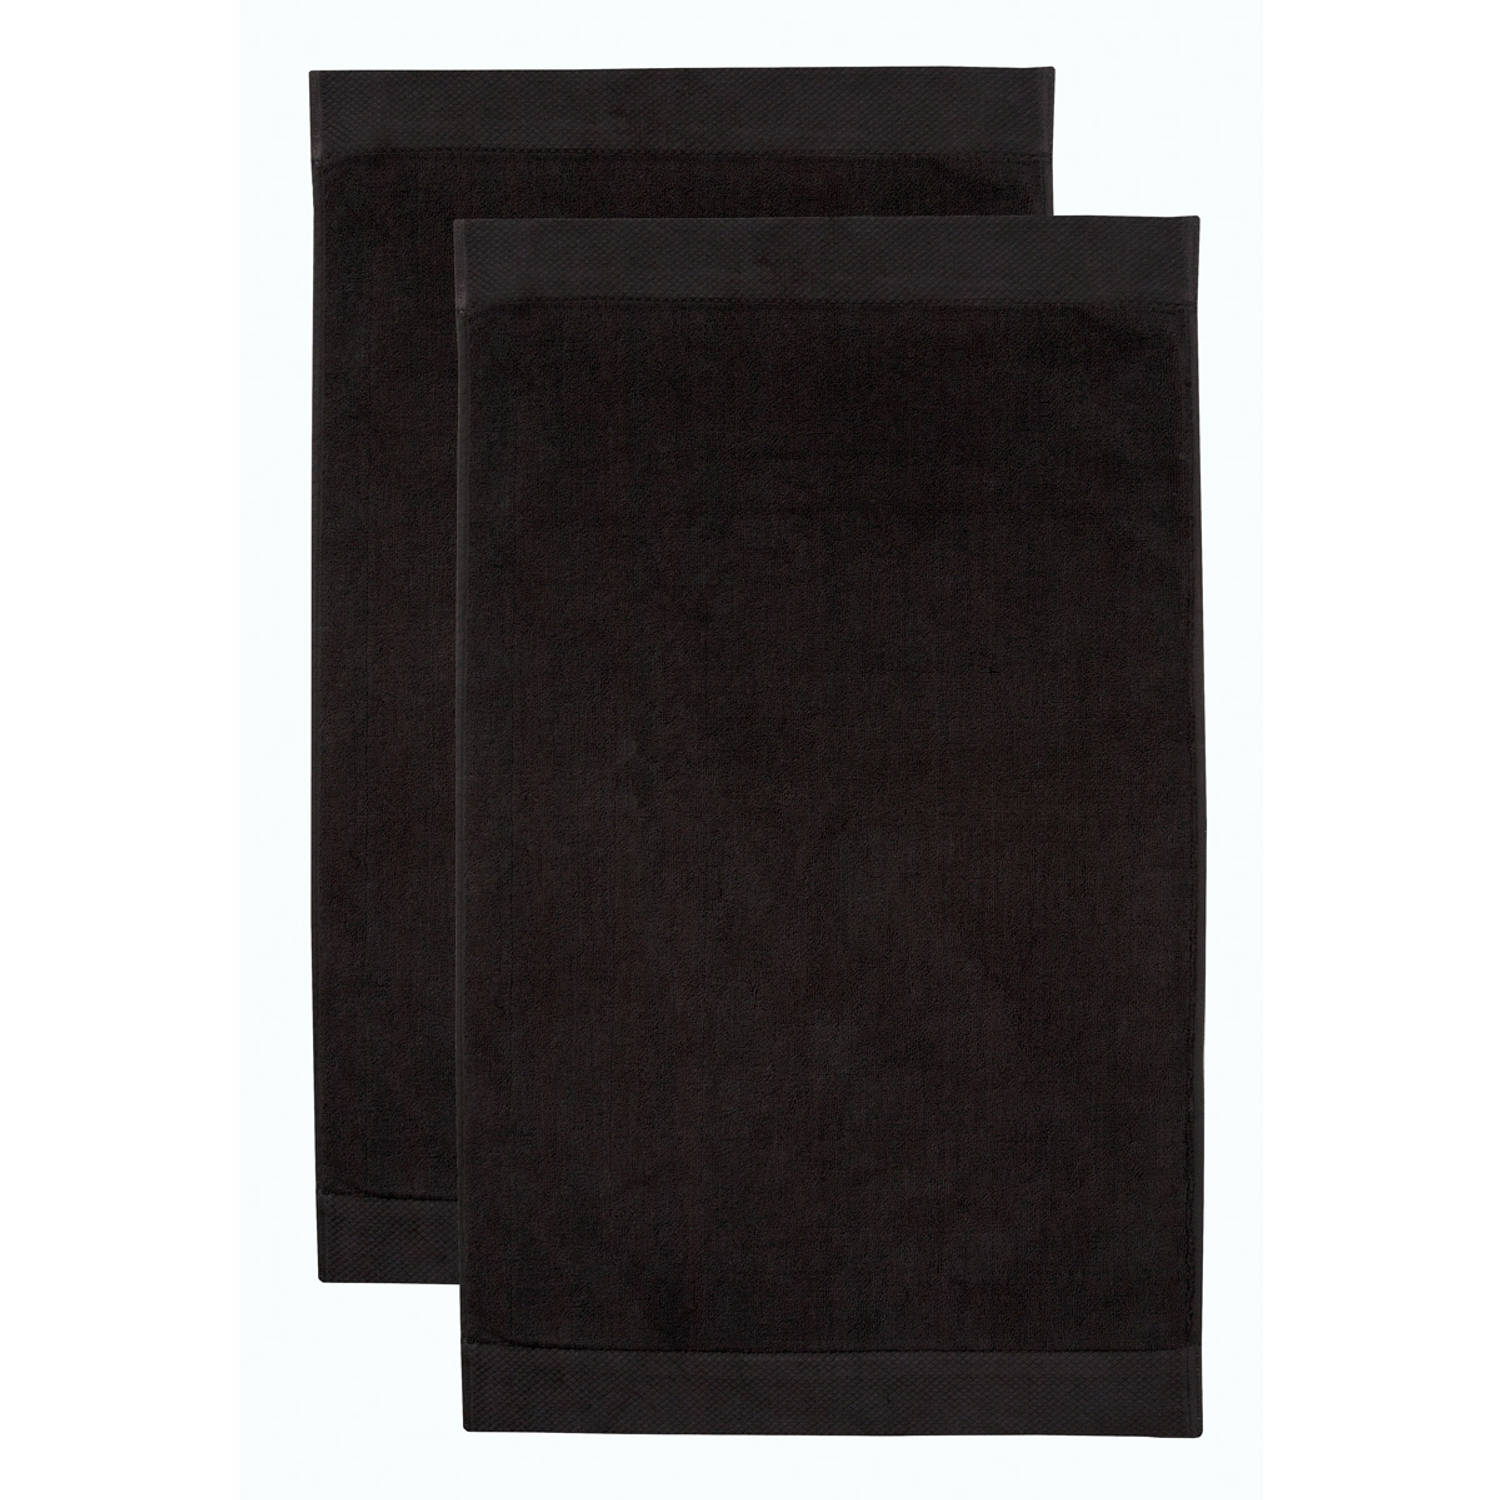 Seahorse Combiset Pure badmat 50 x 90 black (2 stuks)